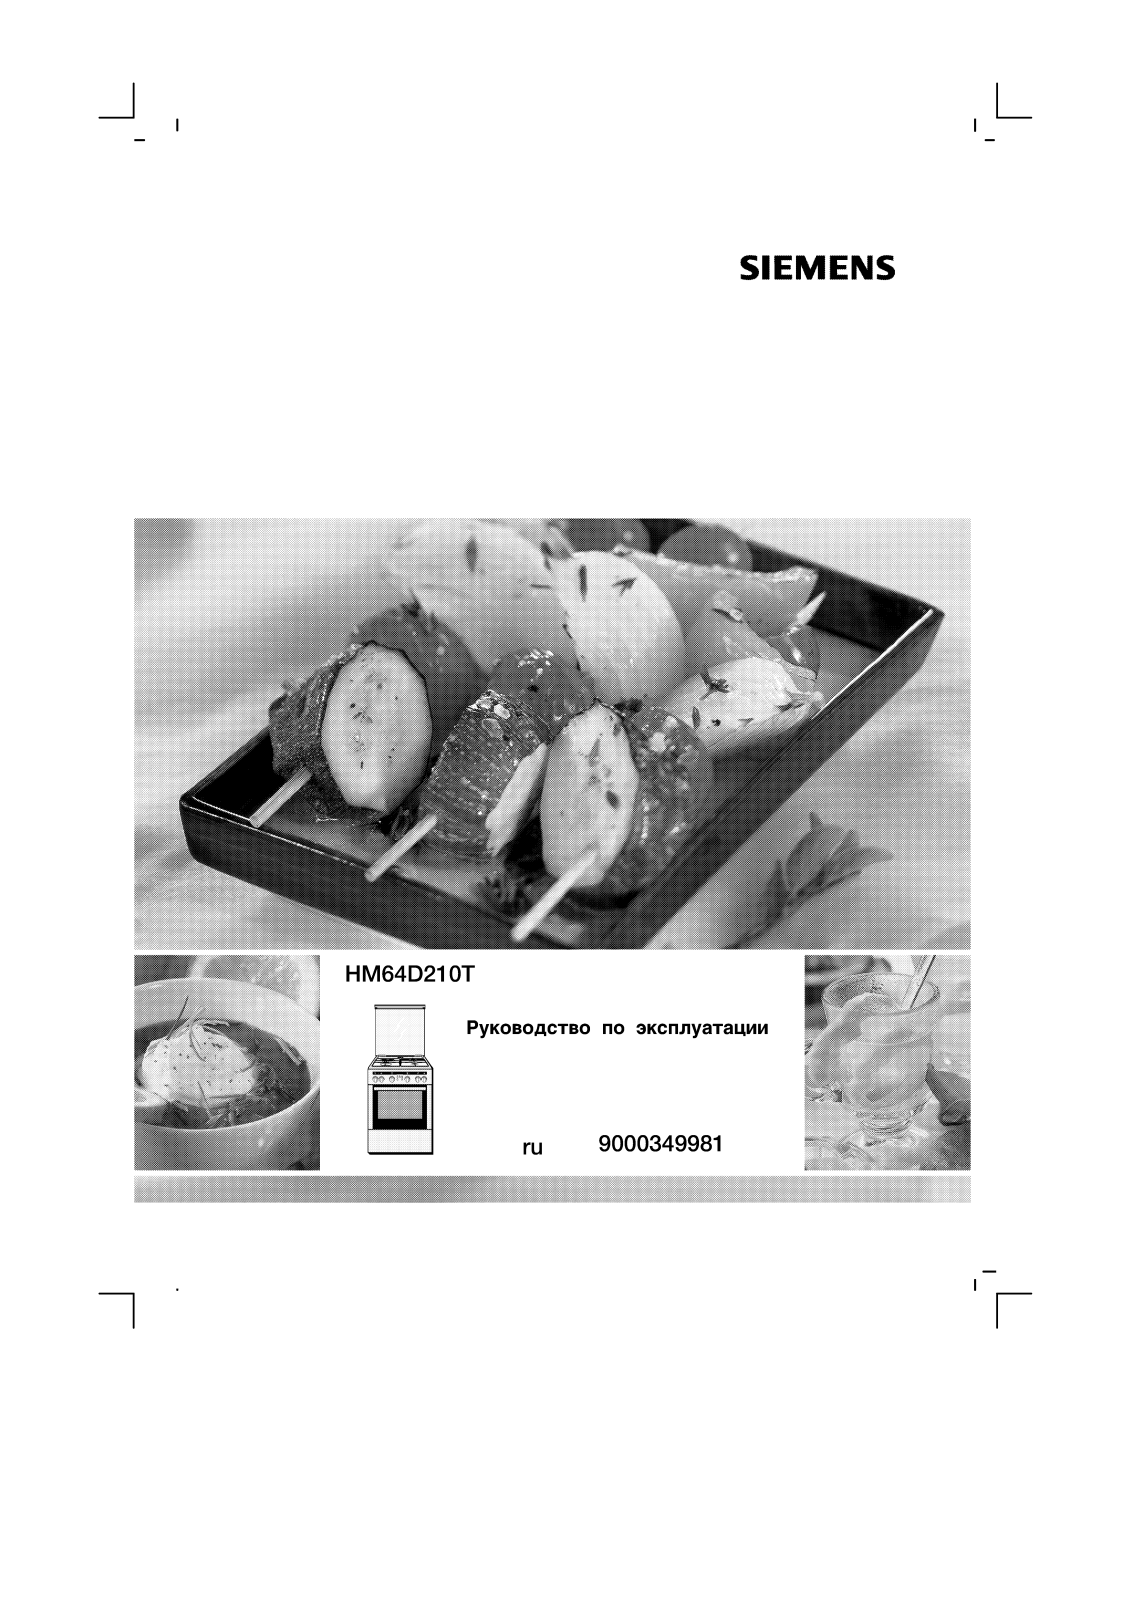 Siemens HM64D210T User Manual